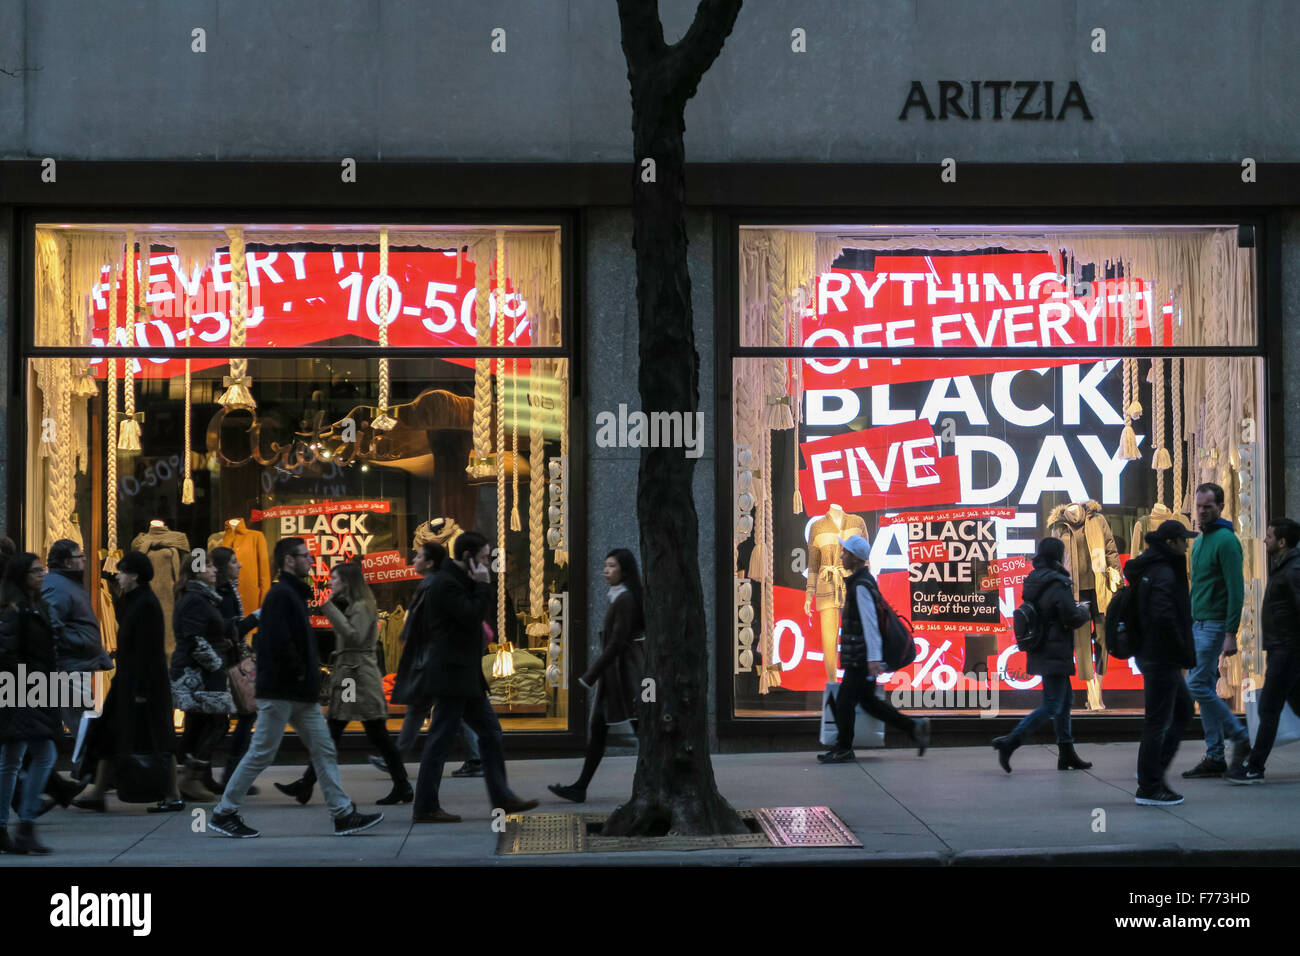 Aritzia Schaufenster Werbung Black Friday Sales, NYC Stockfoto